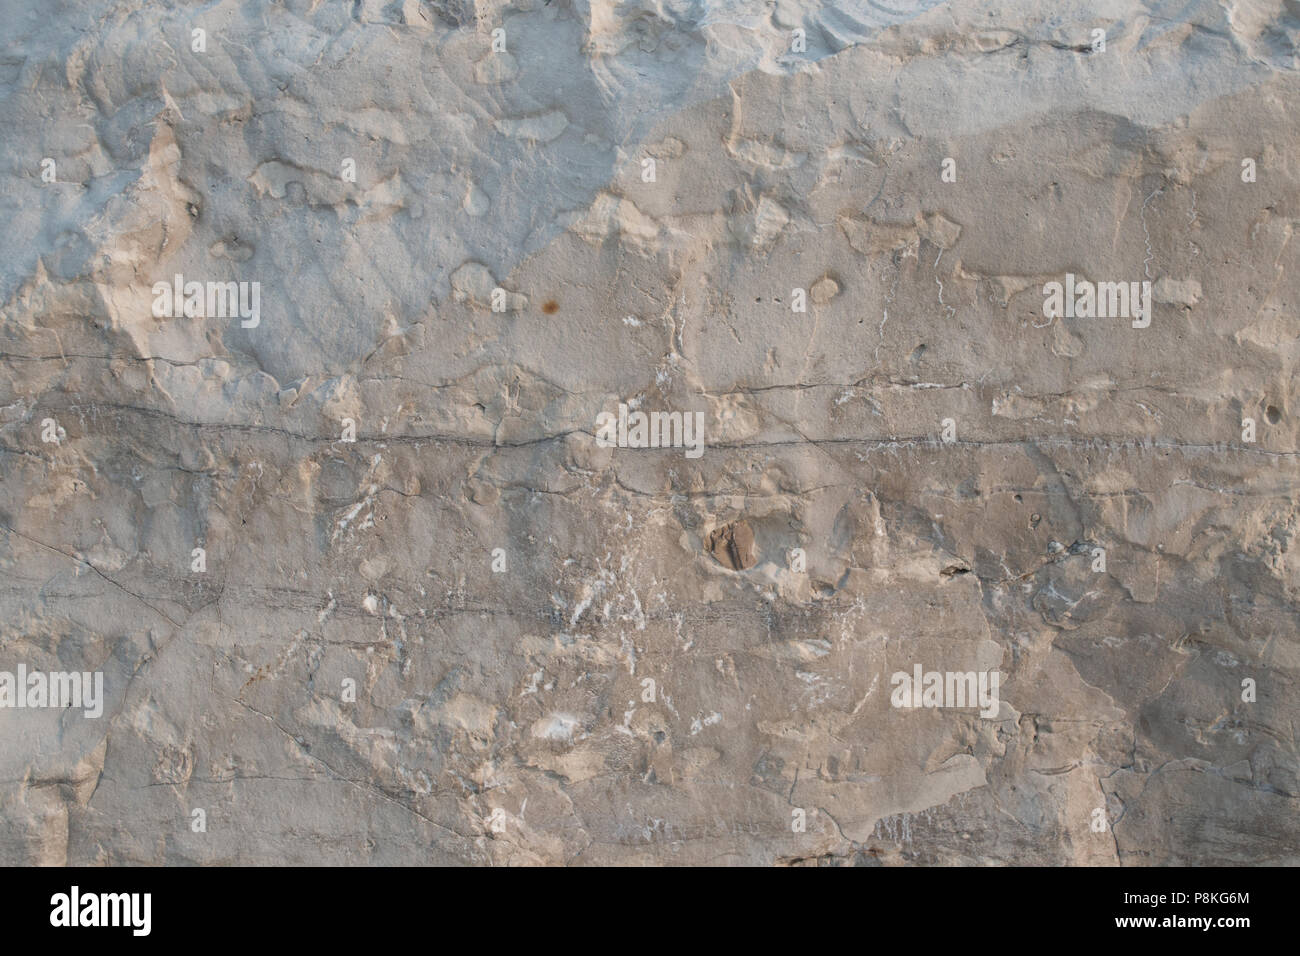 Primo piano di roccia calcarea che mostra la faccia falde a spiovente e i dettagli per la geologia walpaper o dello sfondo. Orientamento orizzontale Foto Stock